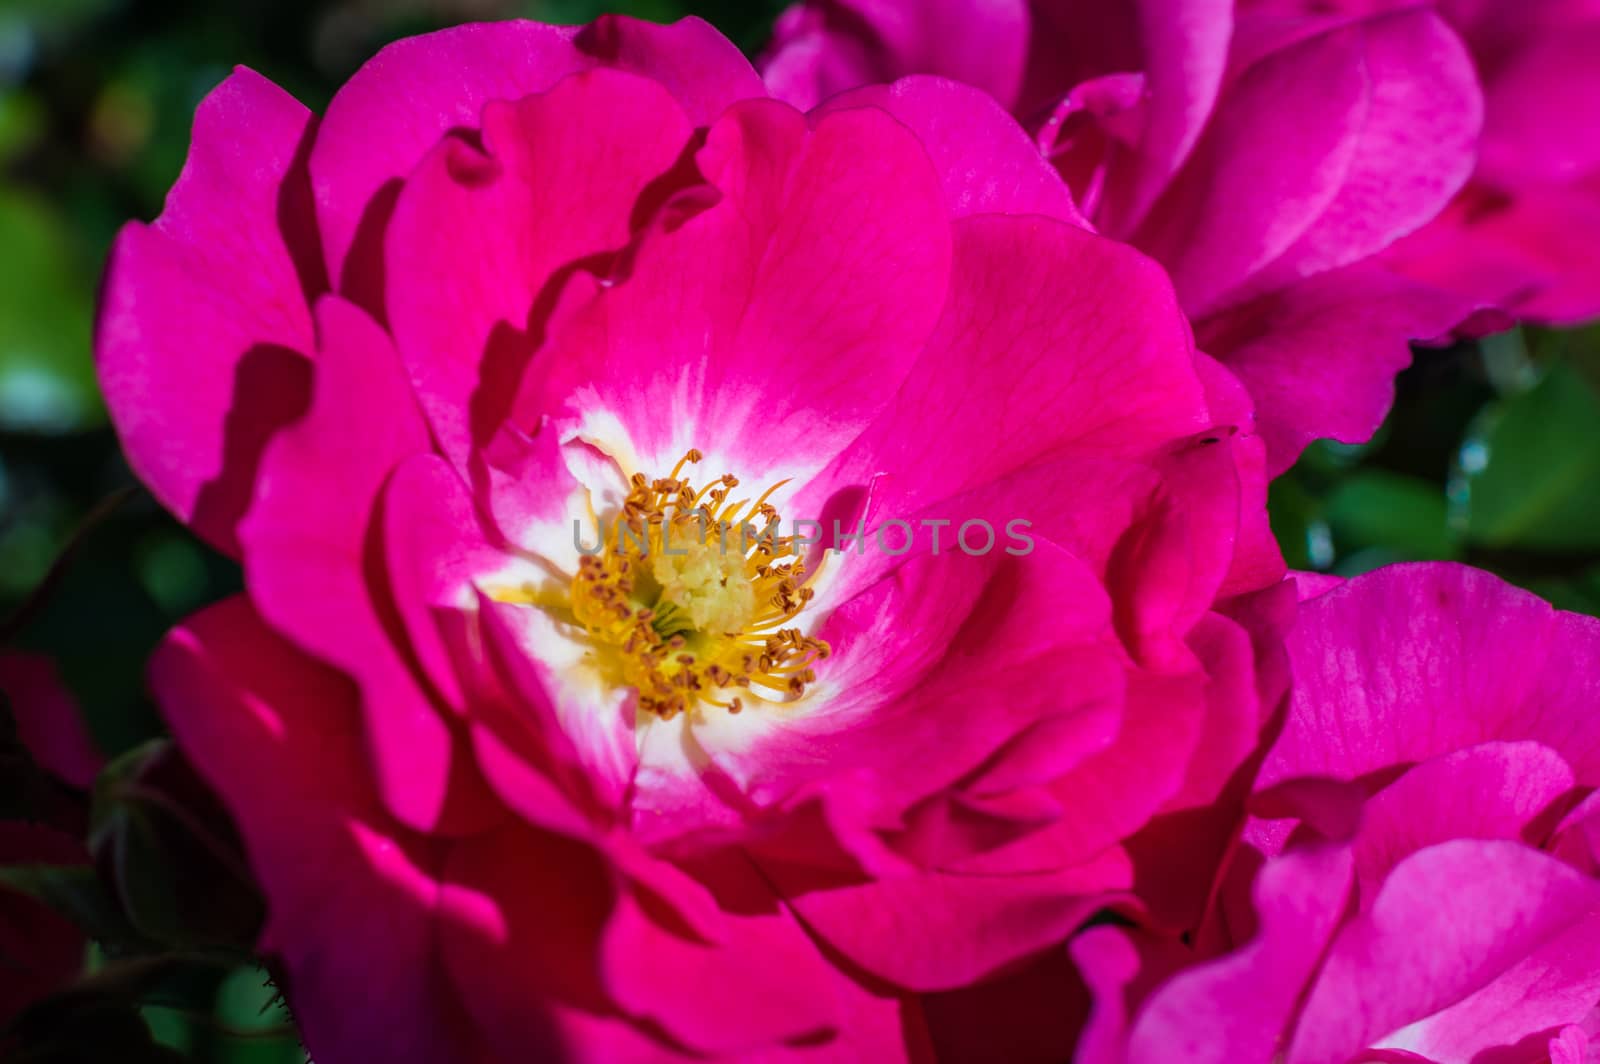 red rose in the garden by okskukuruza